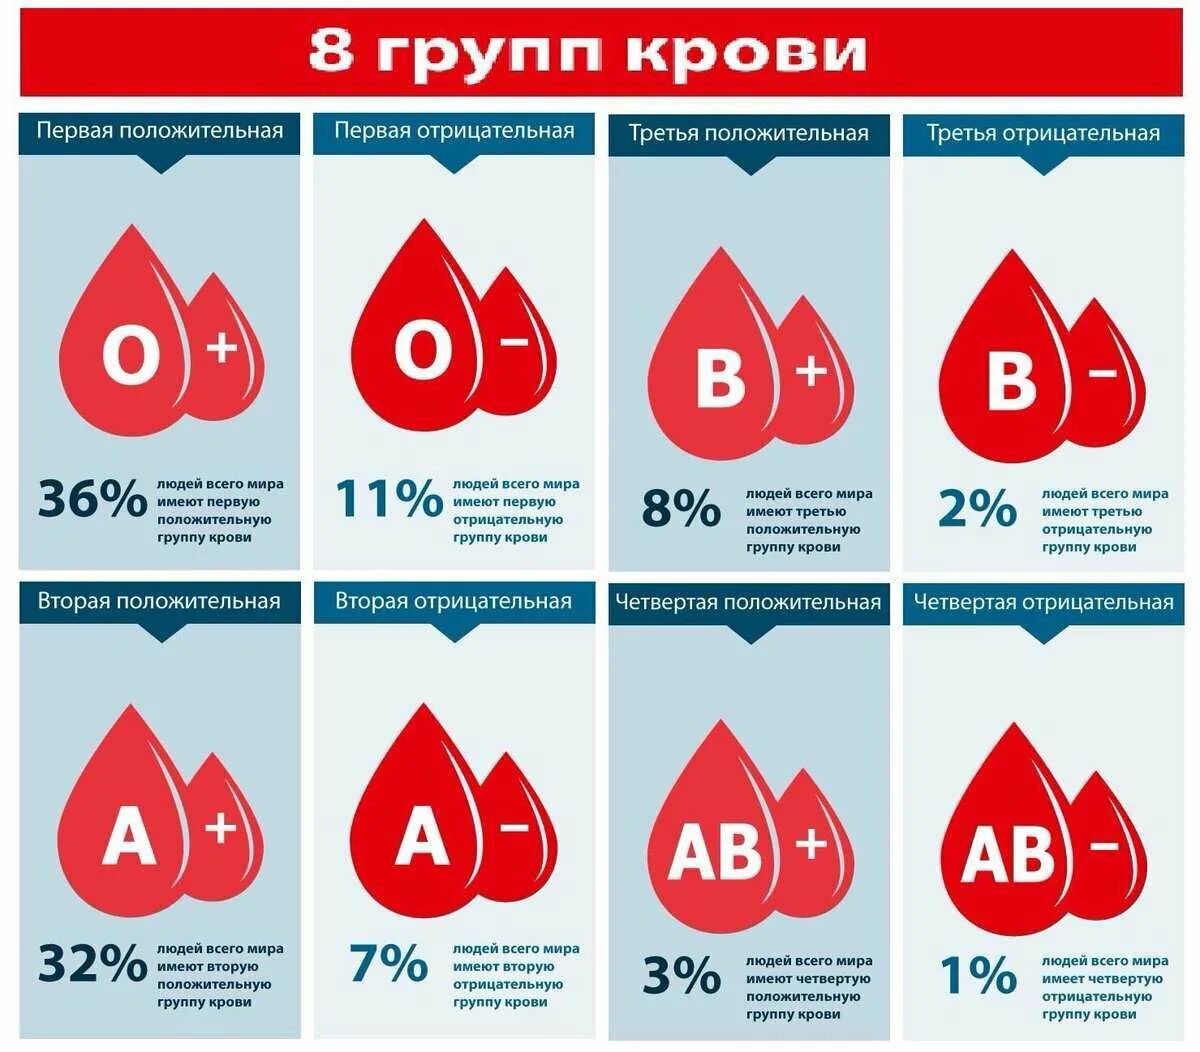 Группа крови. Первая положительная группа крови. Третья положительная кровь. 1отрицательгая группа крови.